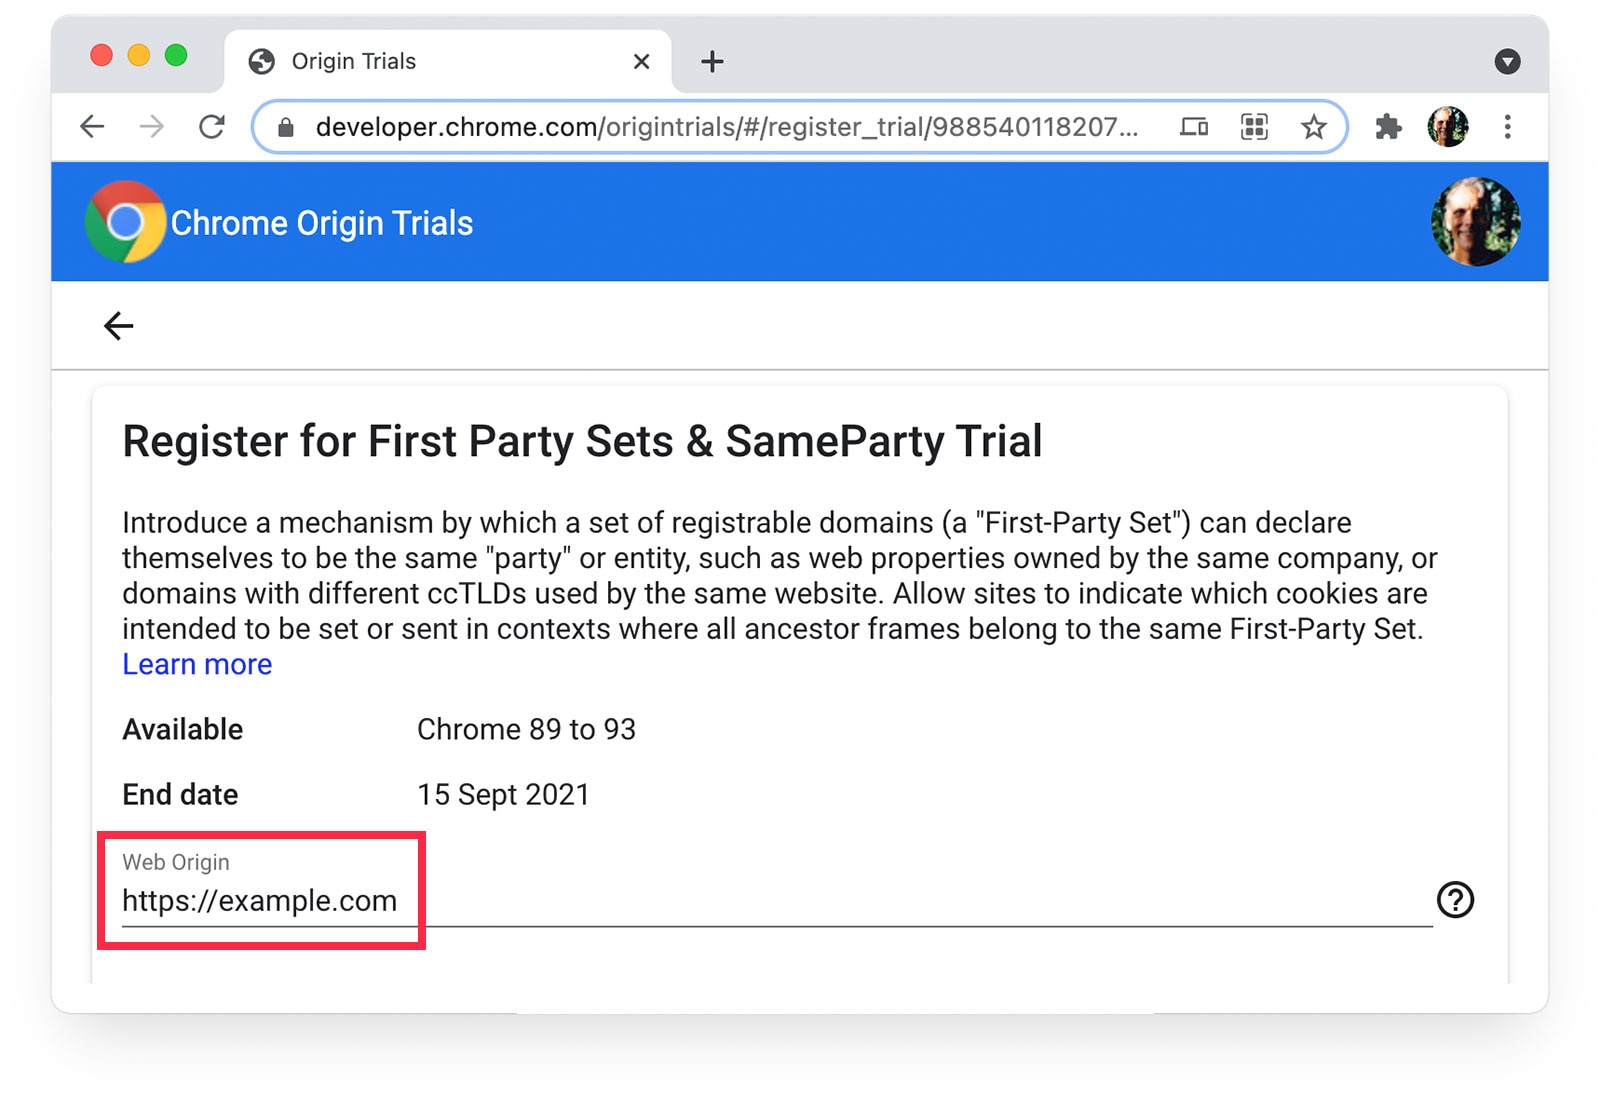 صفحة إصدارات Chrome التجريبية الأصلية
تعرض https://example.com اختيارًا كمصدر الويب